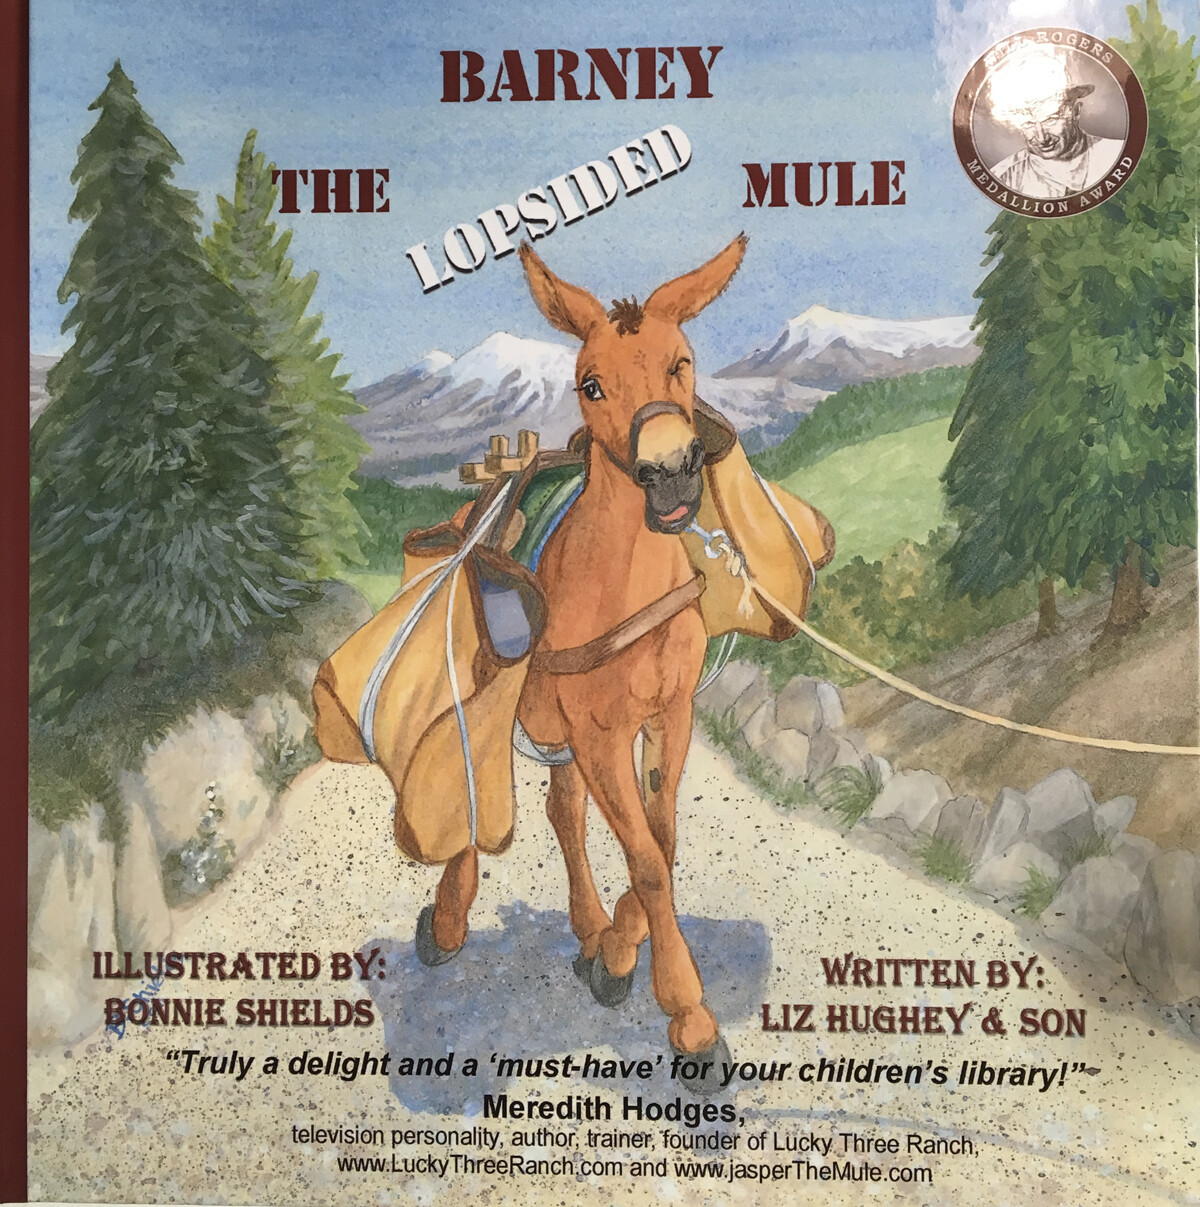 Barney the lopsided mule